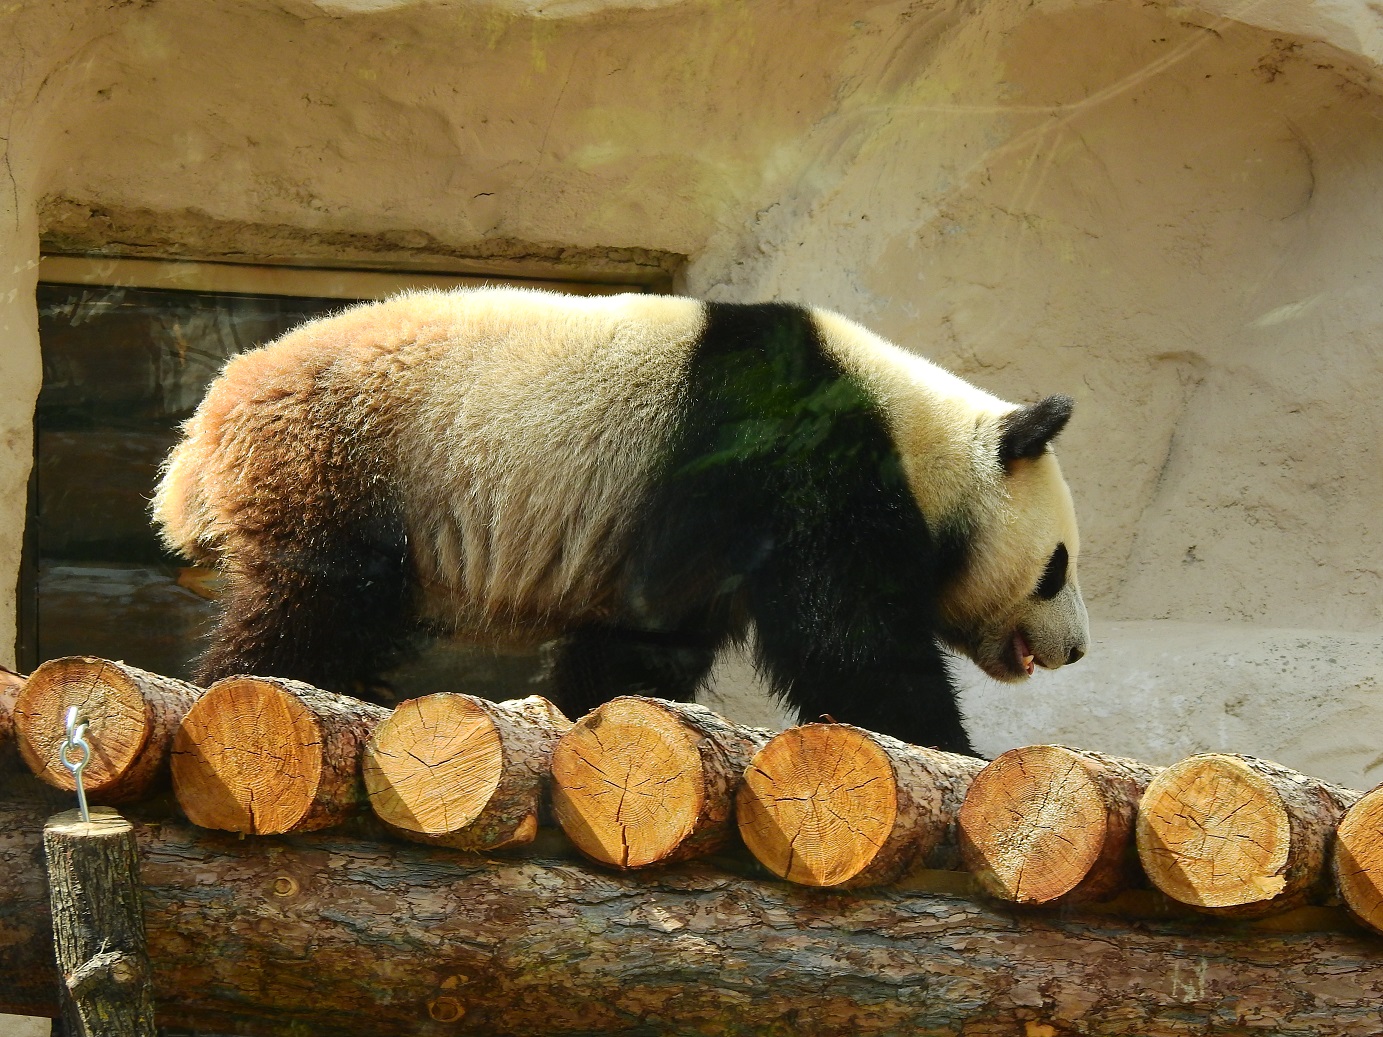 Зоопарк увидеть панду. Панда в Московском зоопарке. Московский зоопарк музей панд. Панда в зоопарке Москвы. Панда из Московского зоопарка.